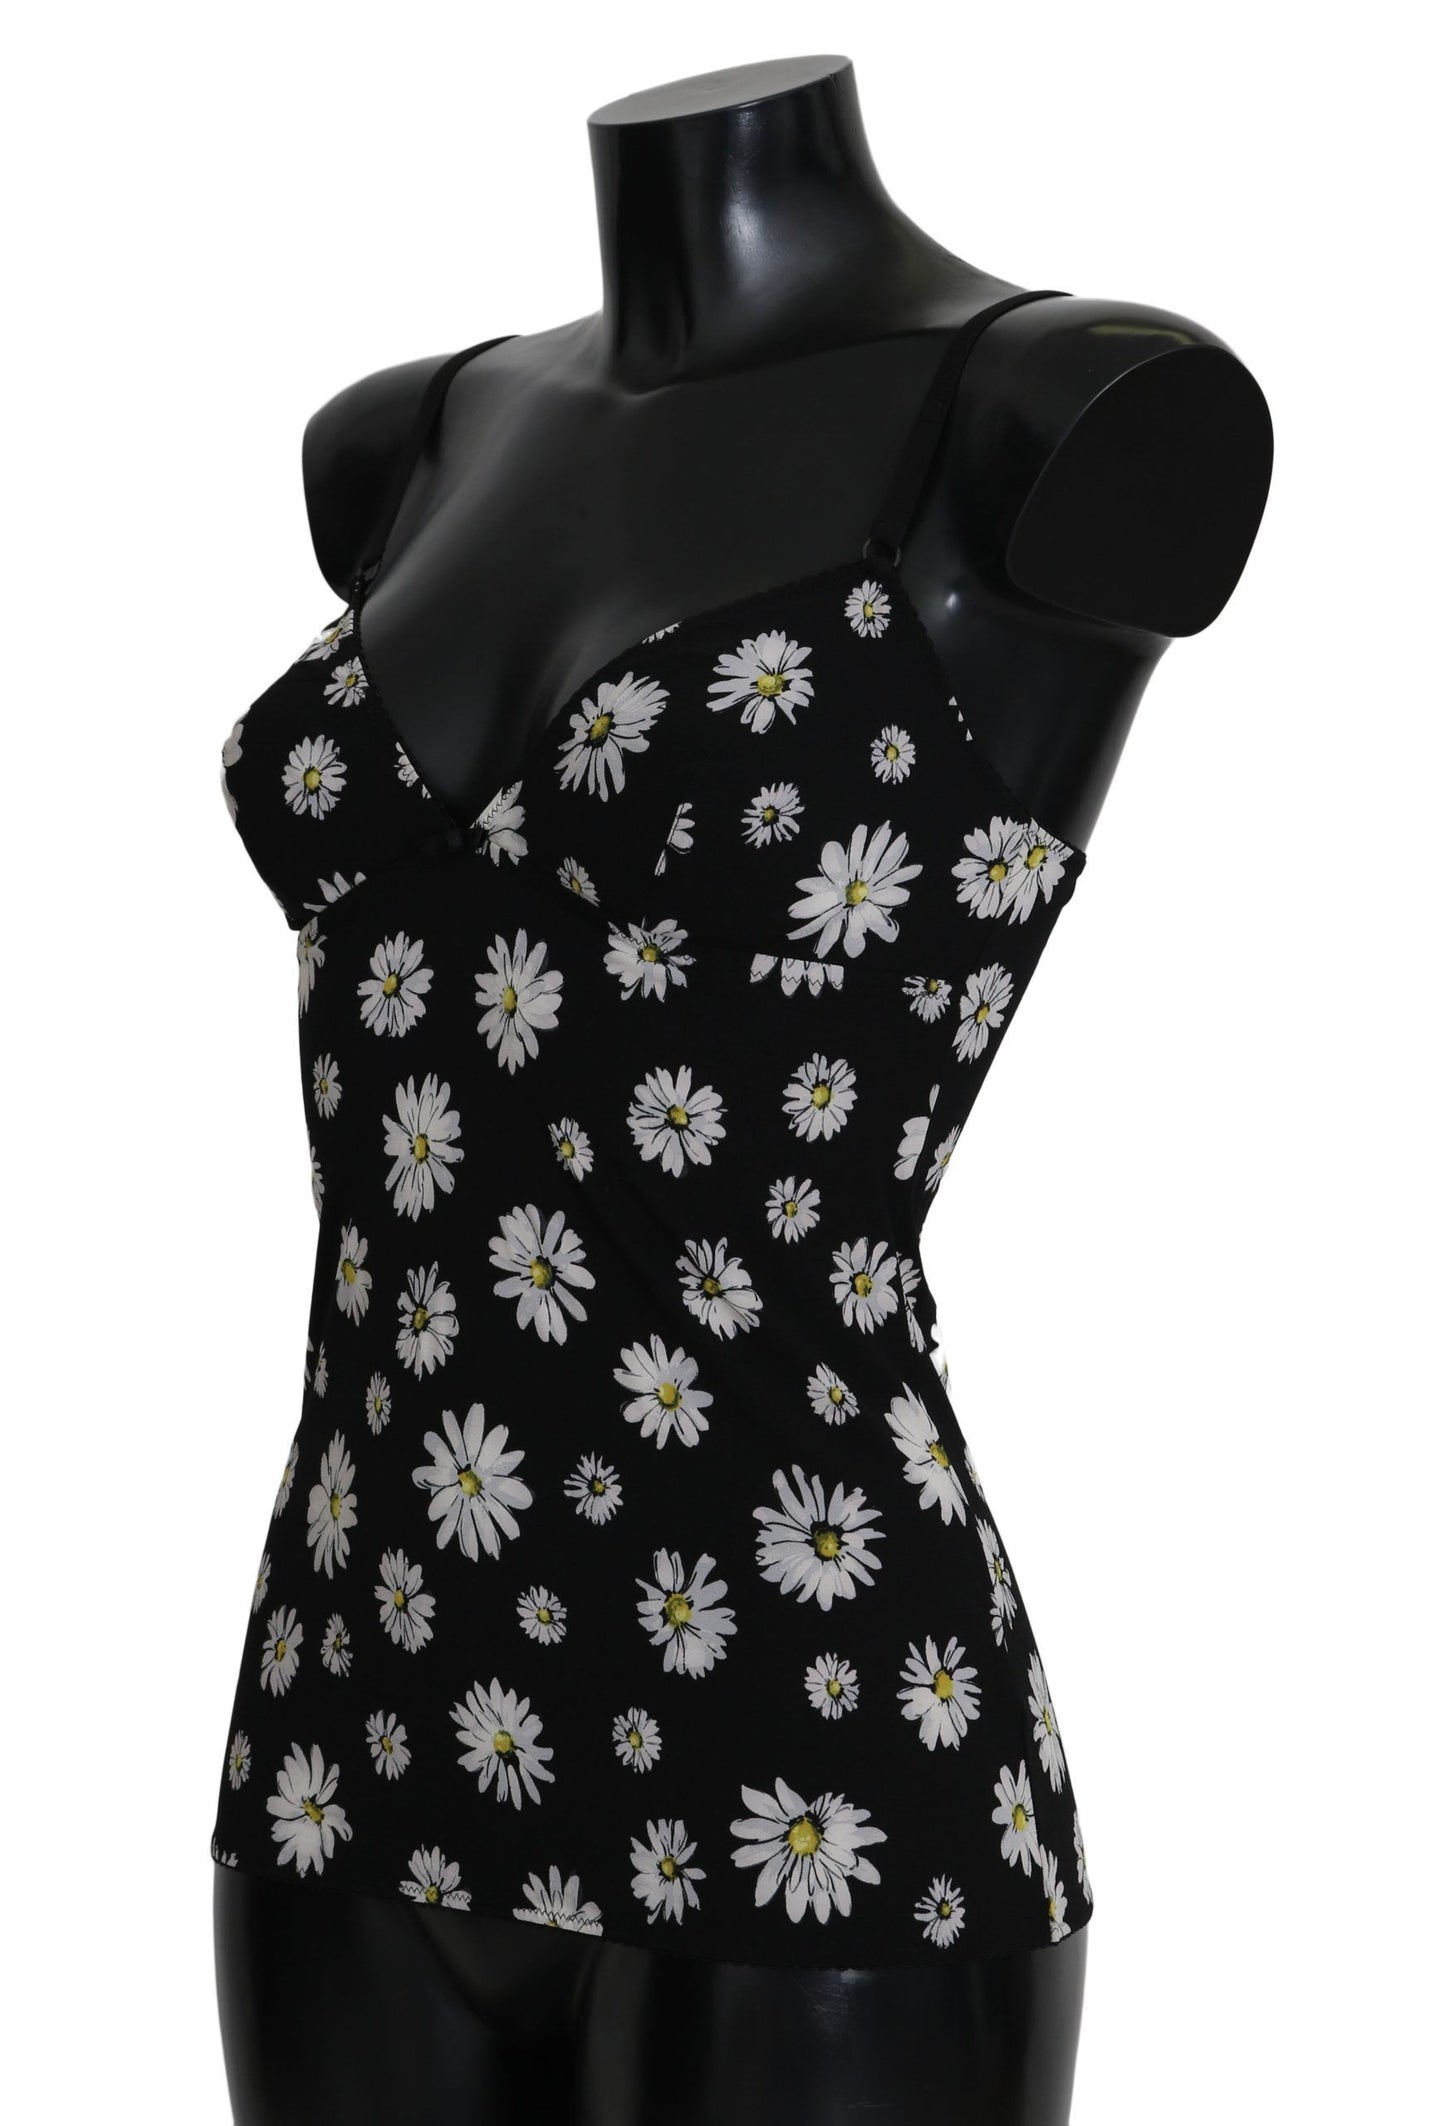 Elegant Black Daisy Floral Lace Chemise Dress